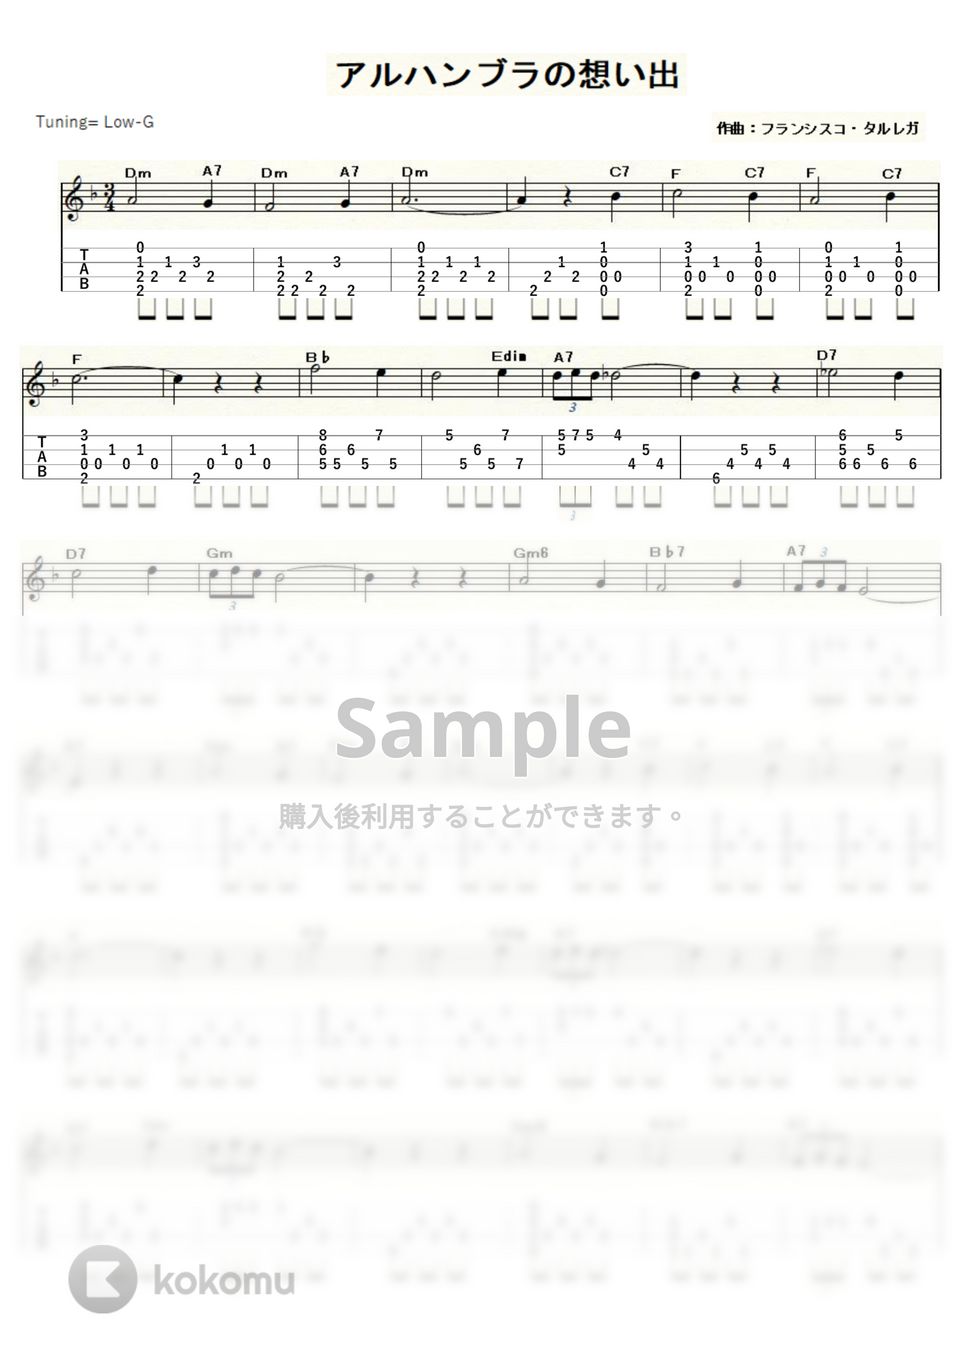 フランシスコ・タレガ - アルハンブラの想い出 (ｳｸﾚﾚｿﾛ / Low-G / 中級～上級) by ukulelepapa